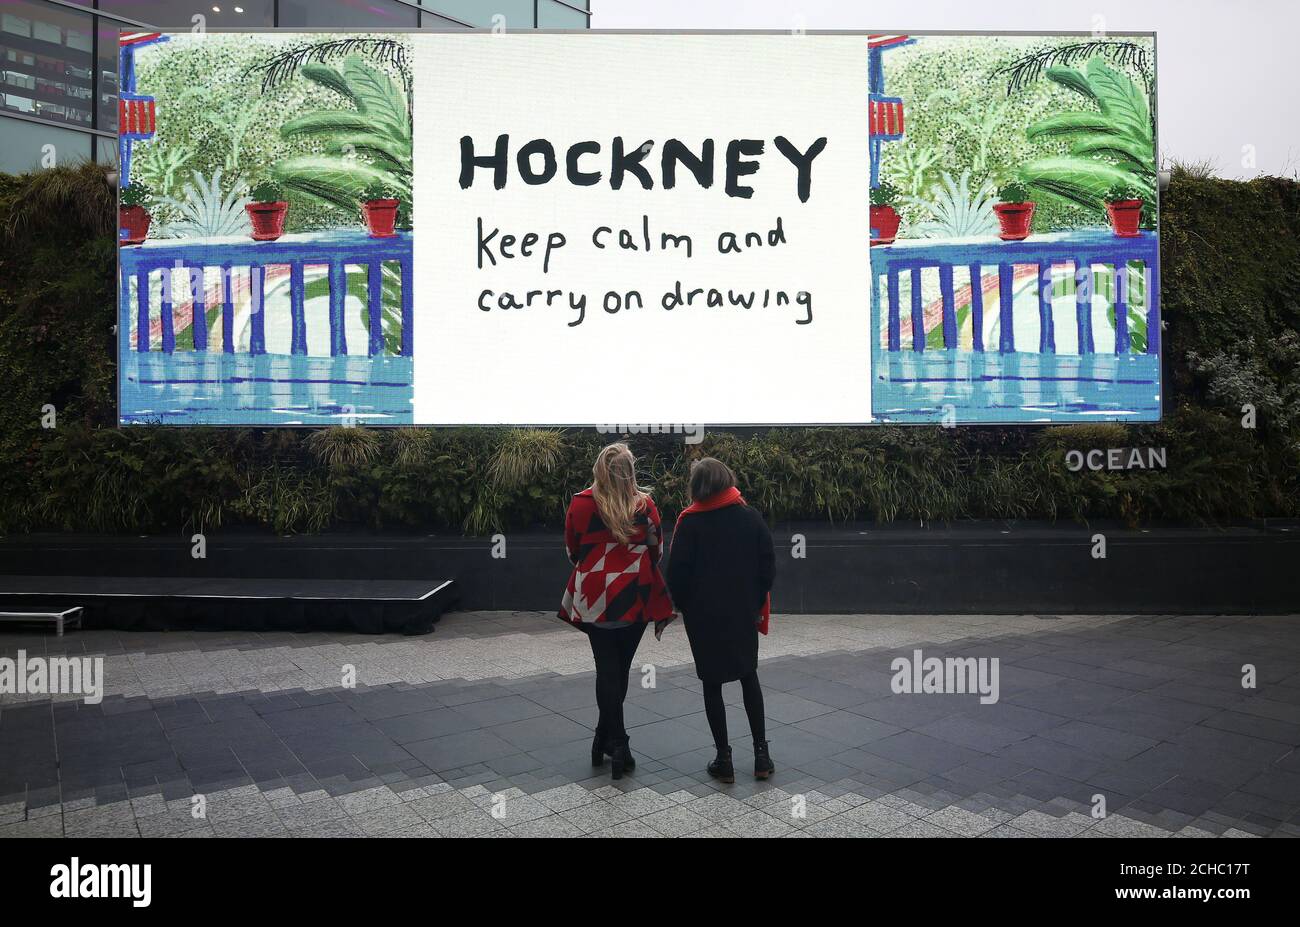 Le persone che guardano un dipinto di David Hockney per iPad visualizzato su una tela digitale a Westfield in Shepherd's Bush, Londra, per segnare l'apertura della sua retrospettiva Tate Britain. Foto Stock